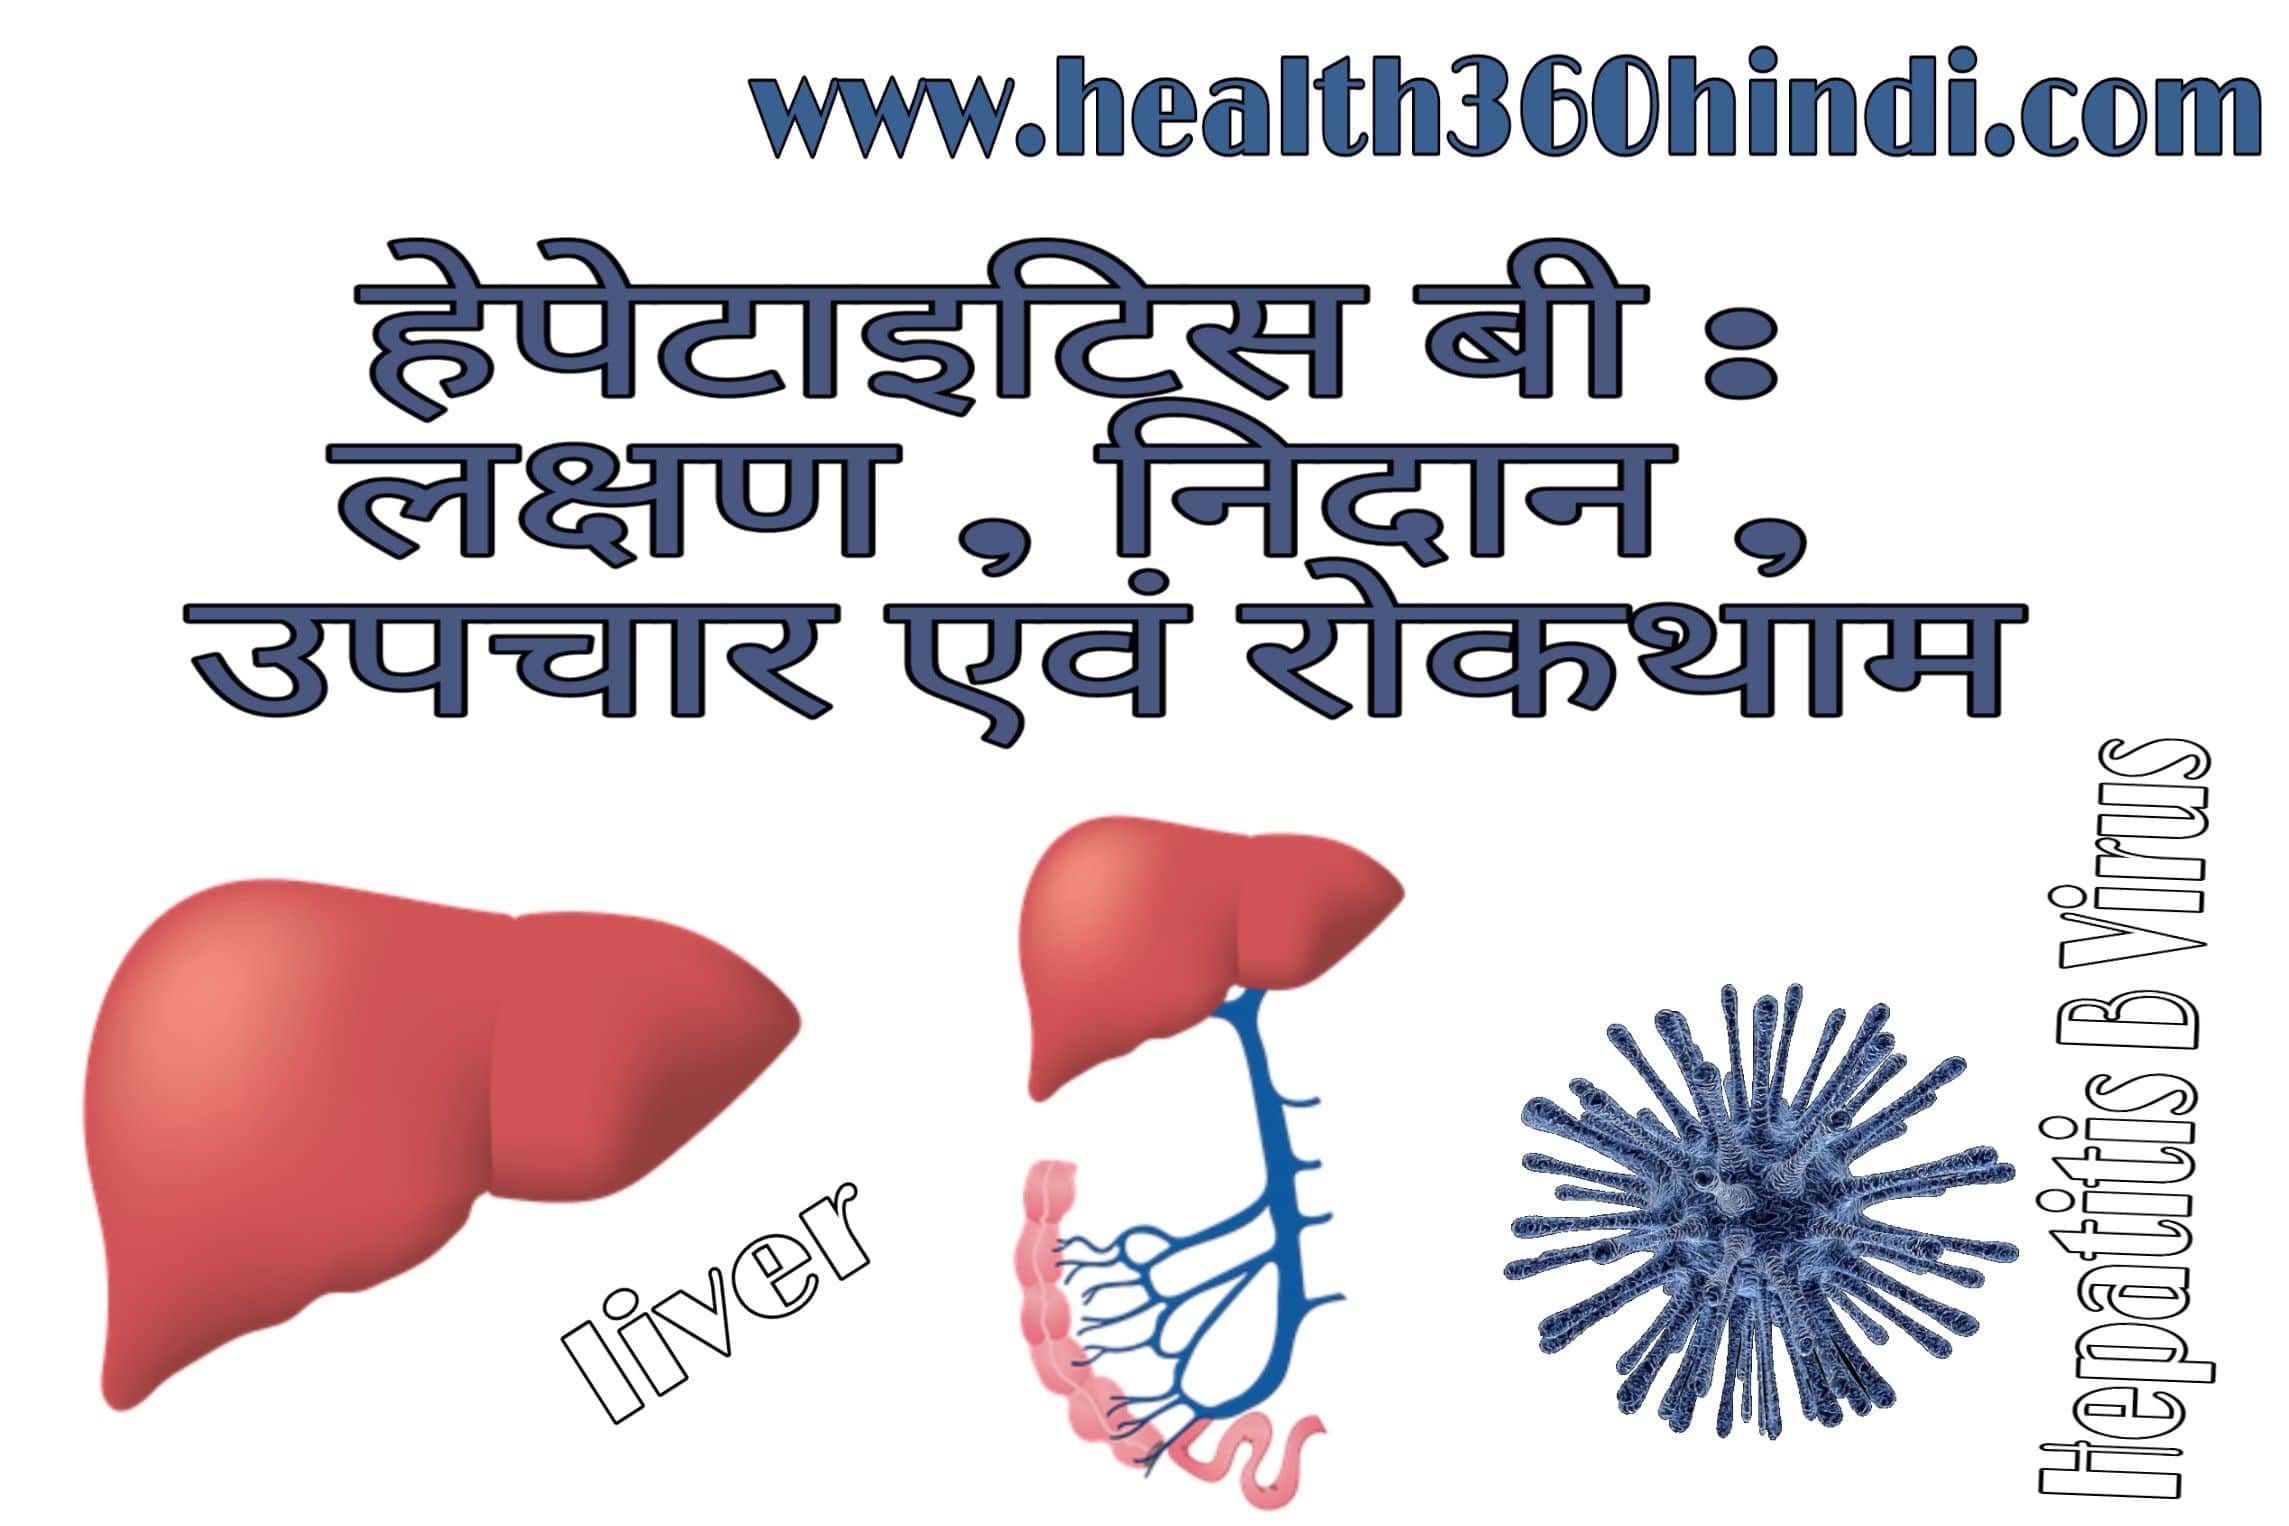 Hepatitis B in Hindi